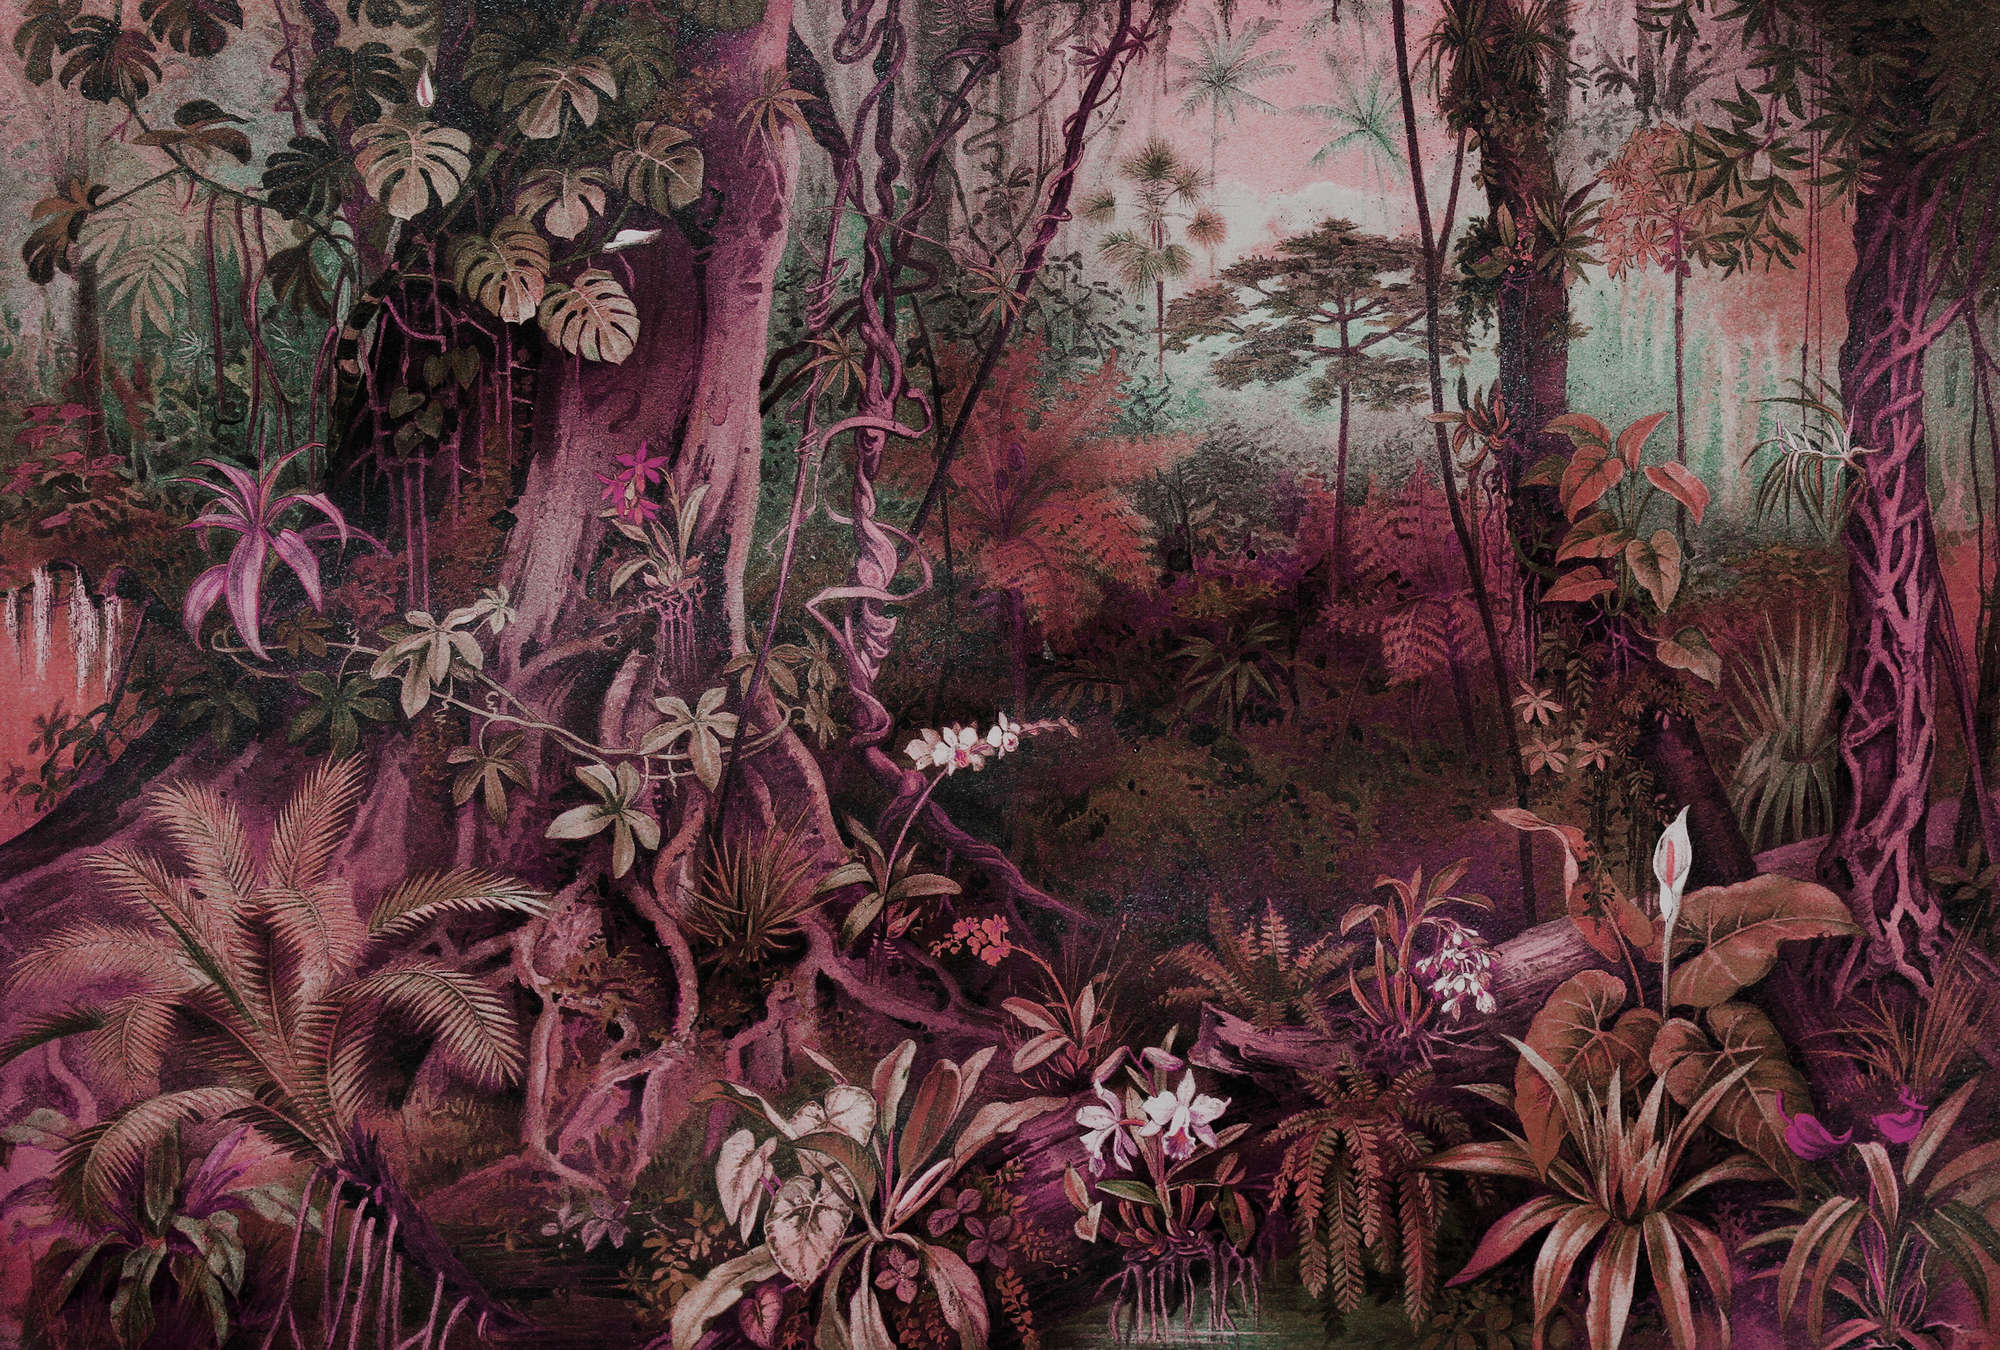             Dschungel Fototapete im Zeichenstil – Lila, Grün
        